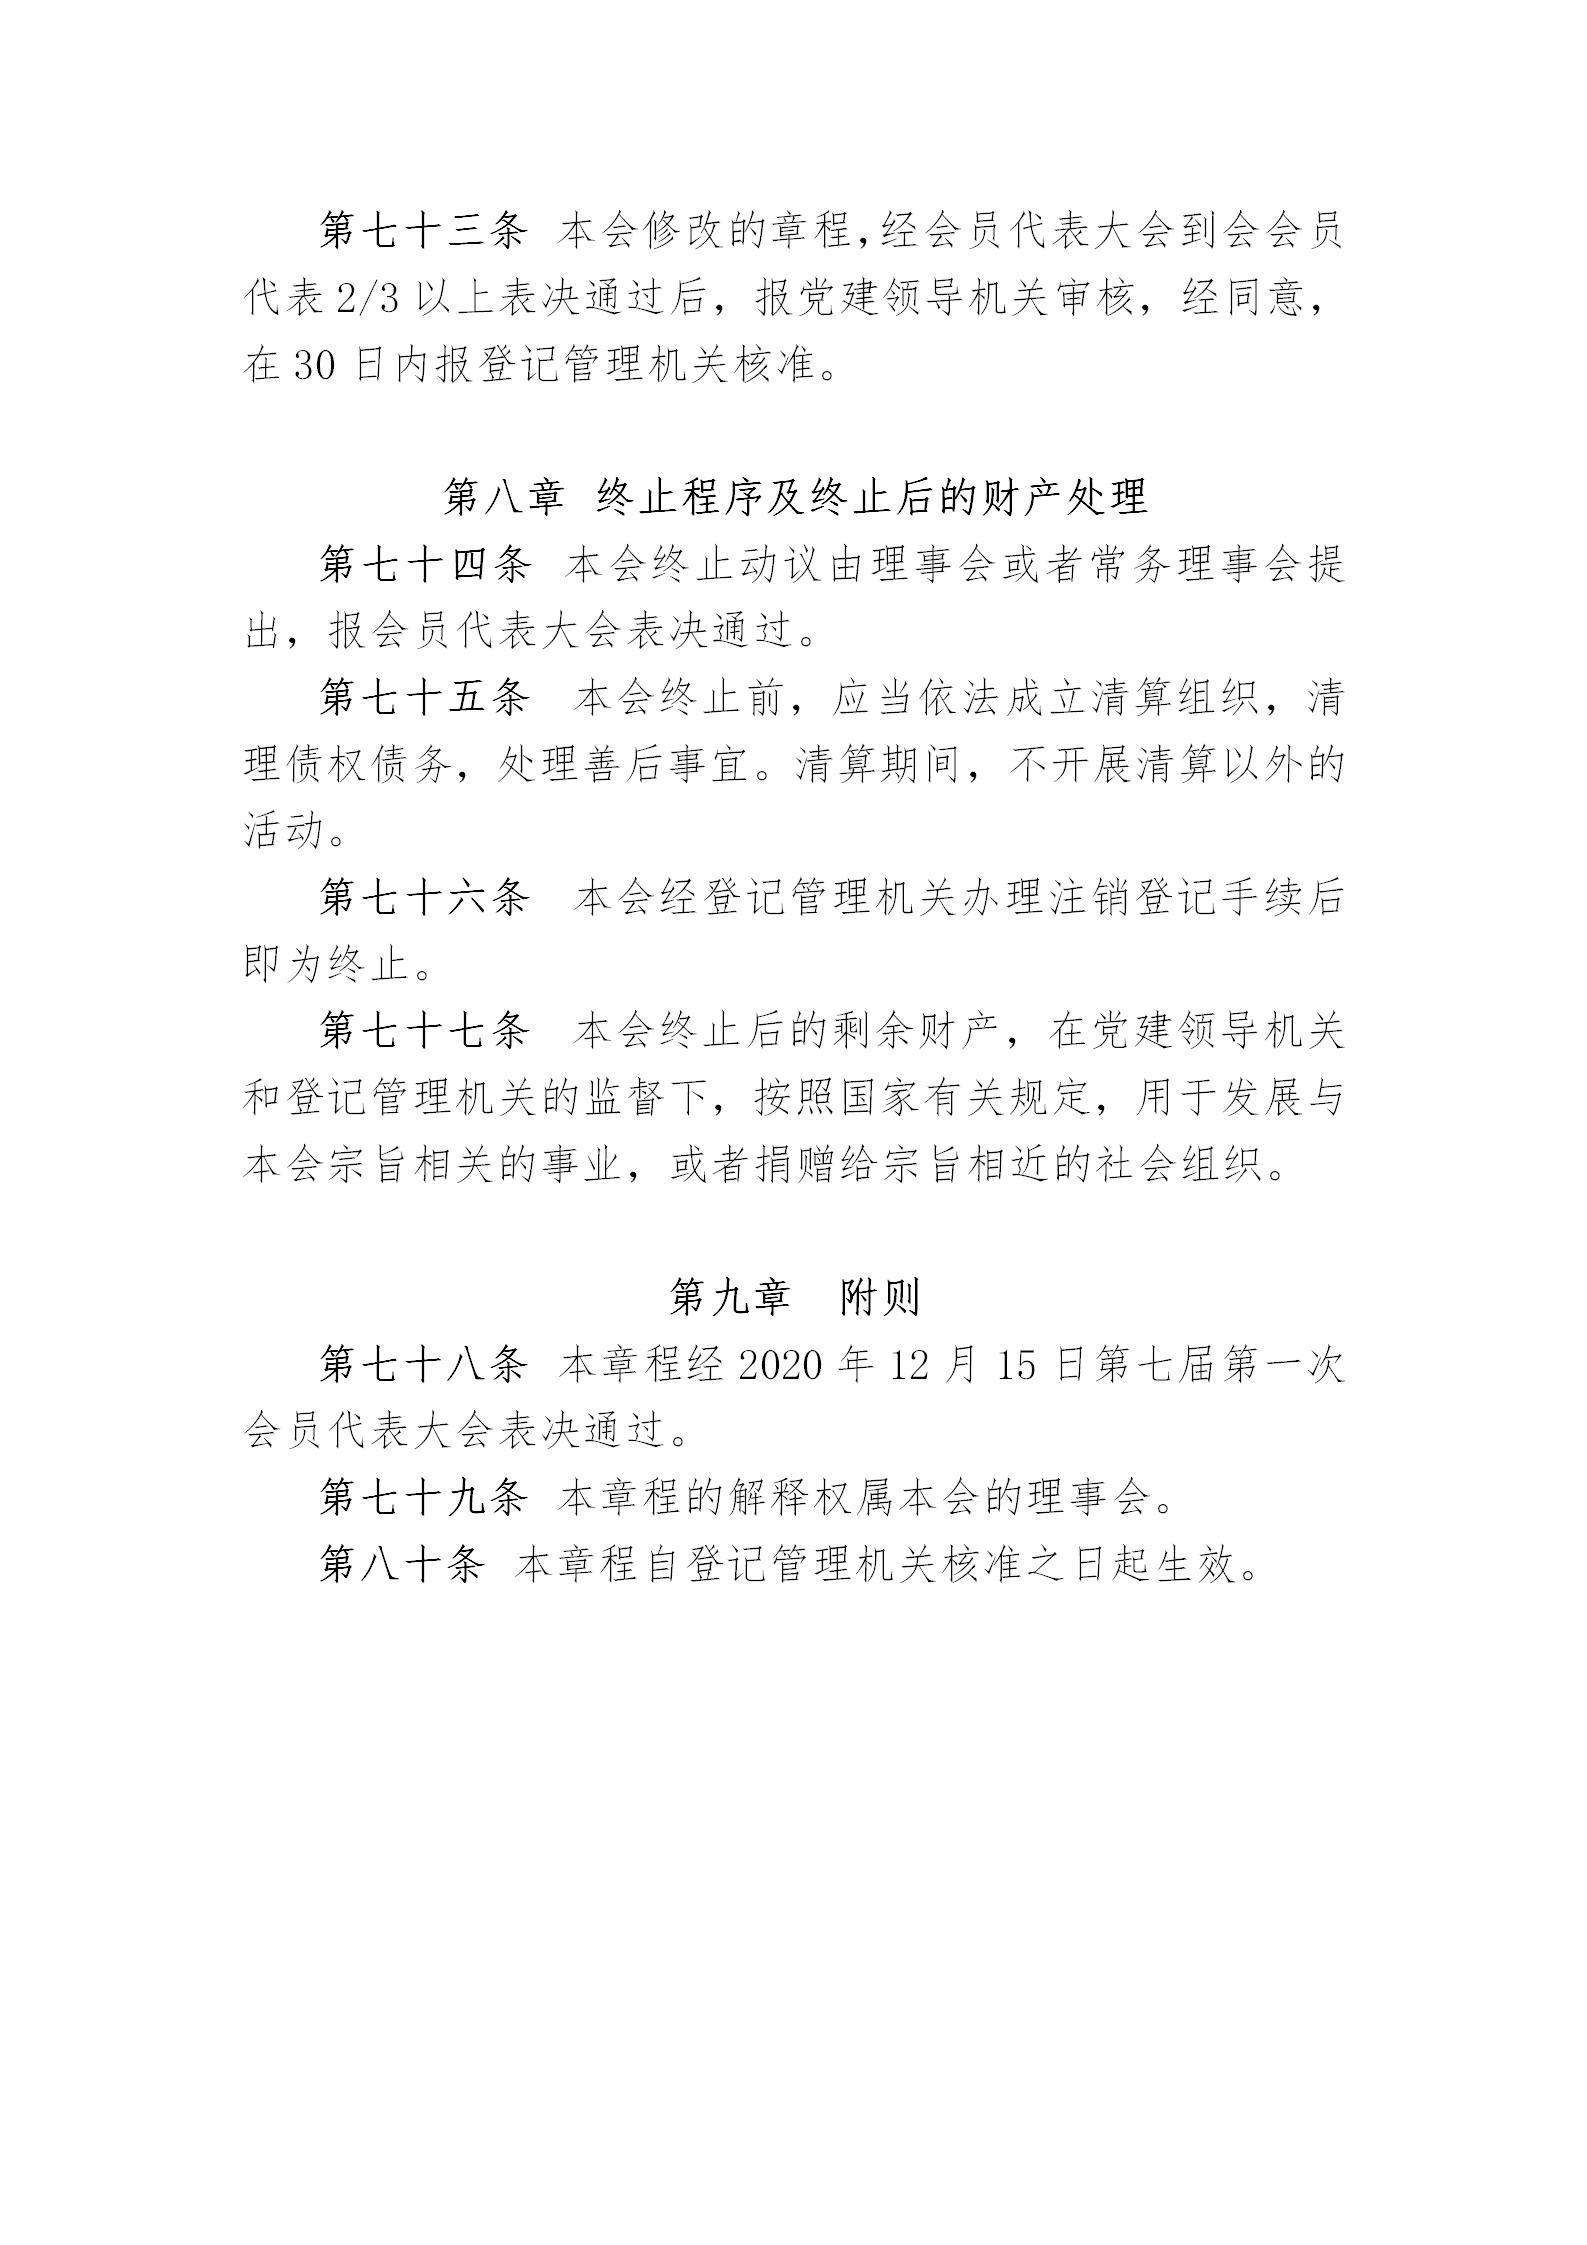 中国演艺设备技术协会章程(定稿)_18.jpg